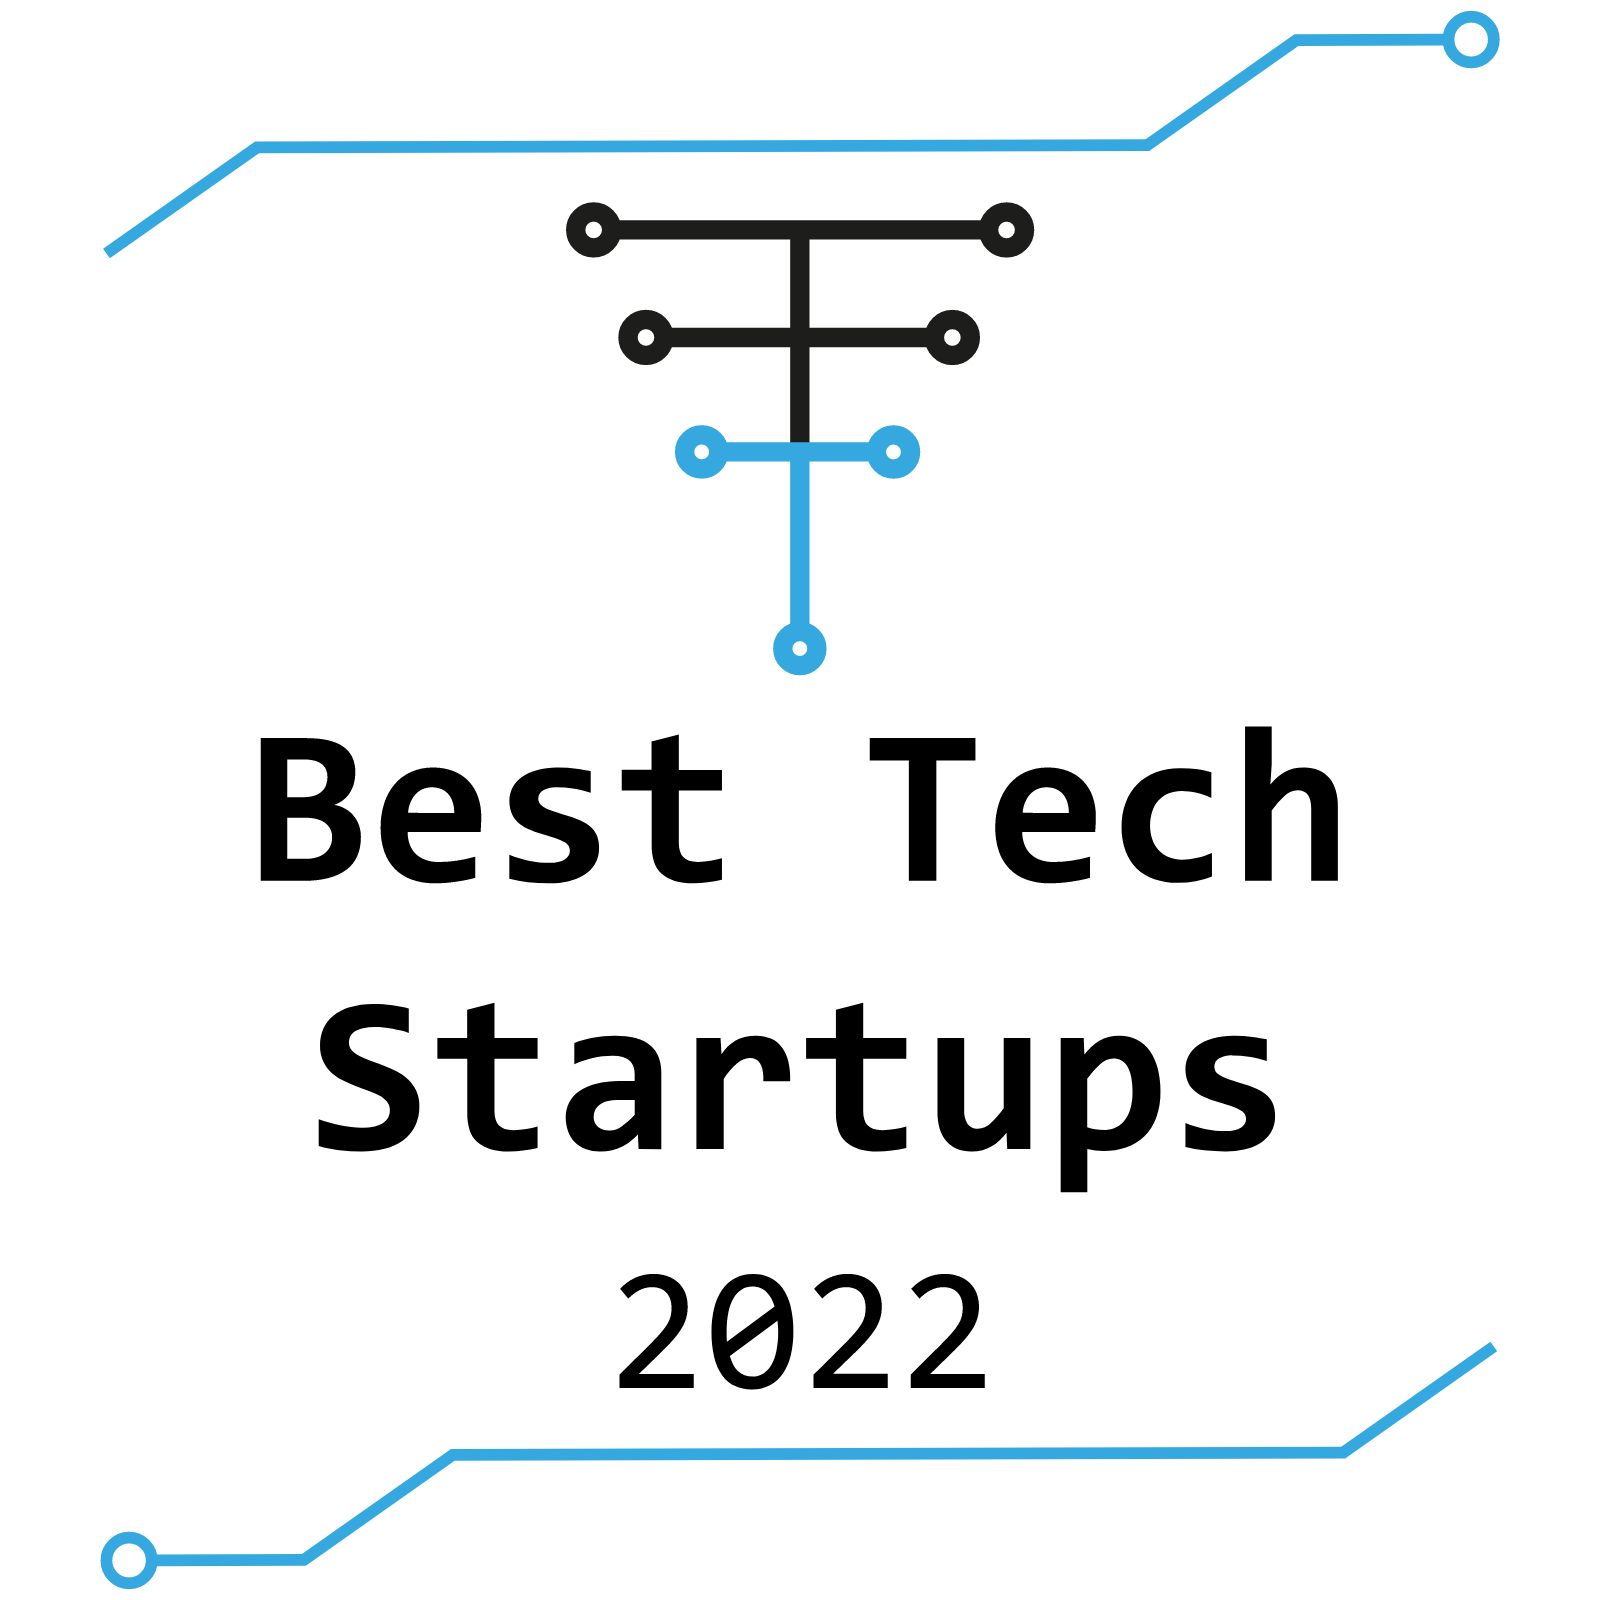 Best Tech Startup 2022